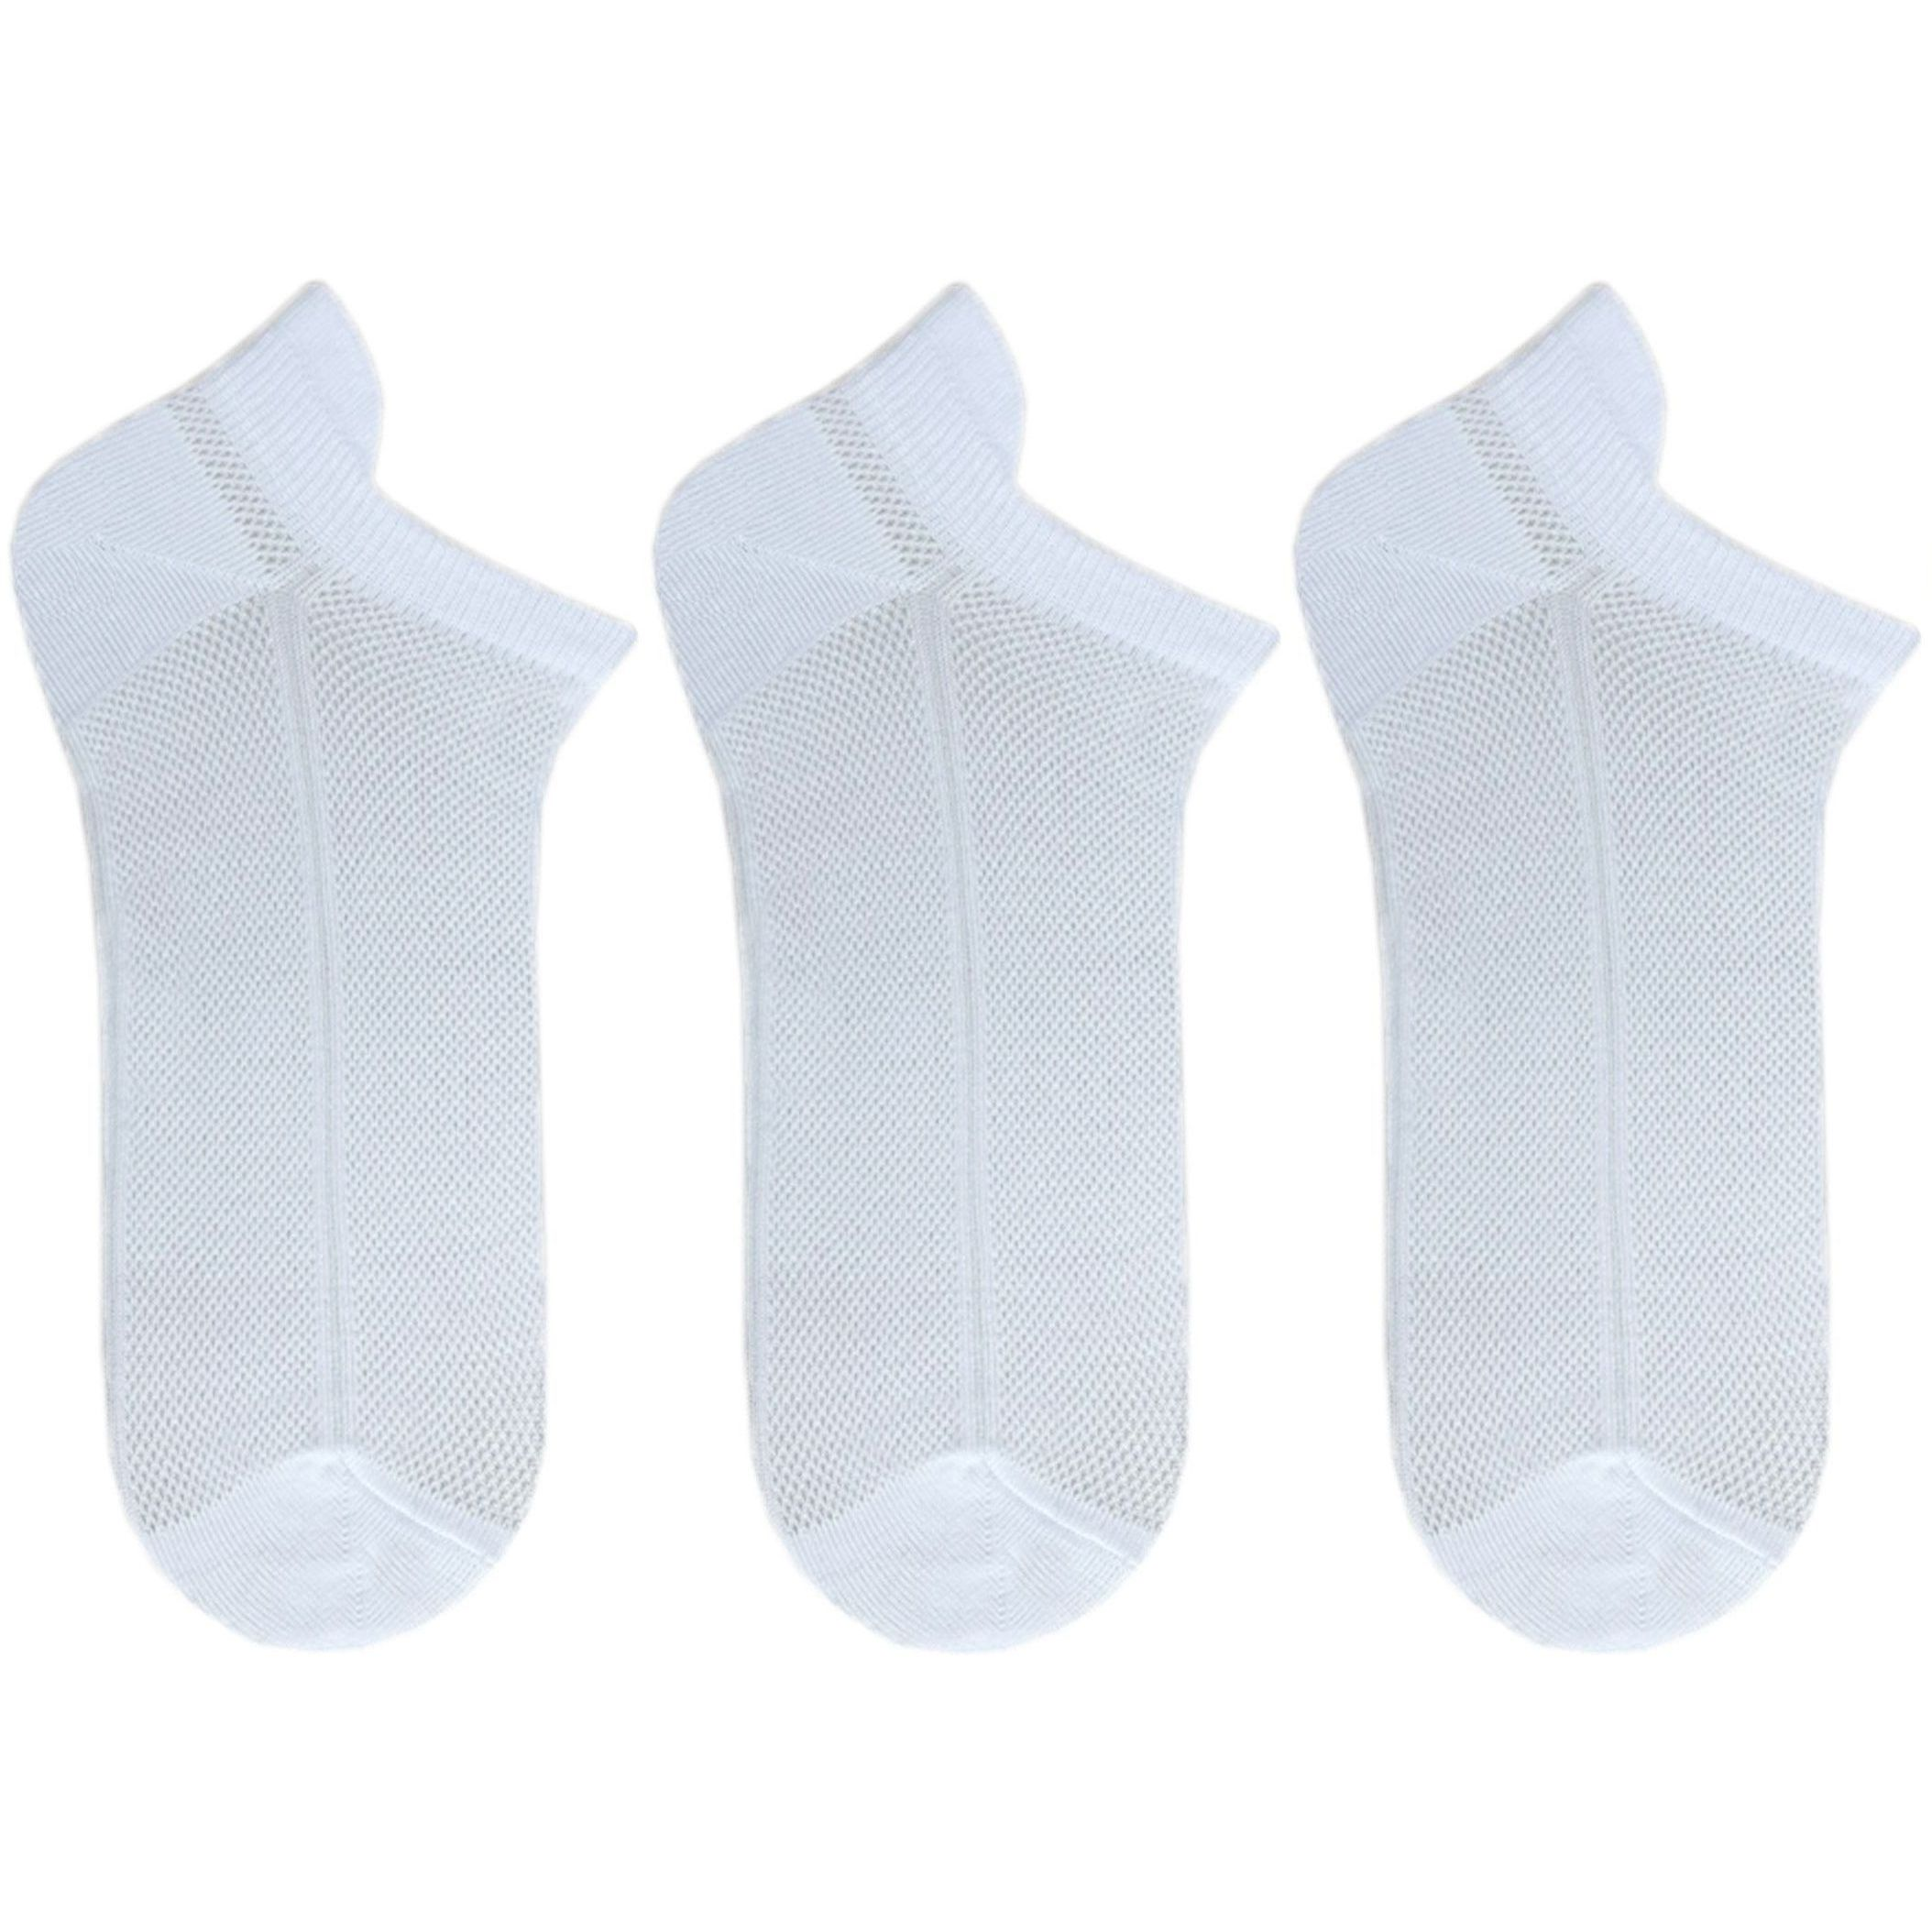 Набір жіночих шкарпеток Premier Socks 36-40 3 пари білі (4820163319247)фото1